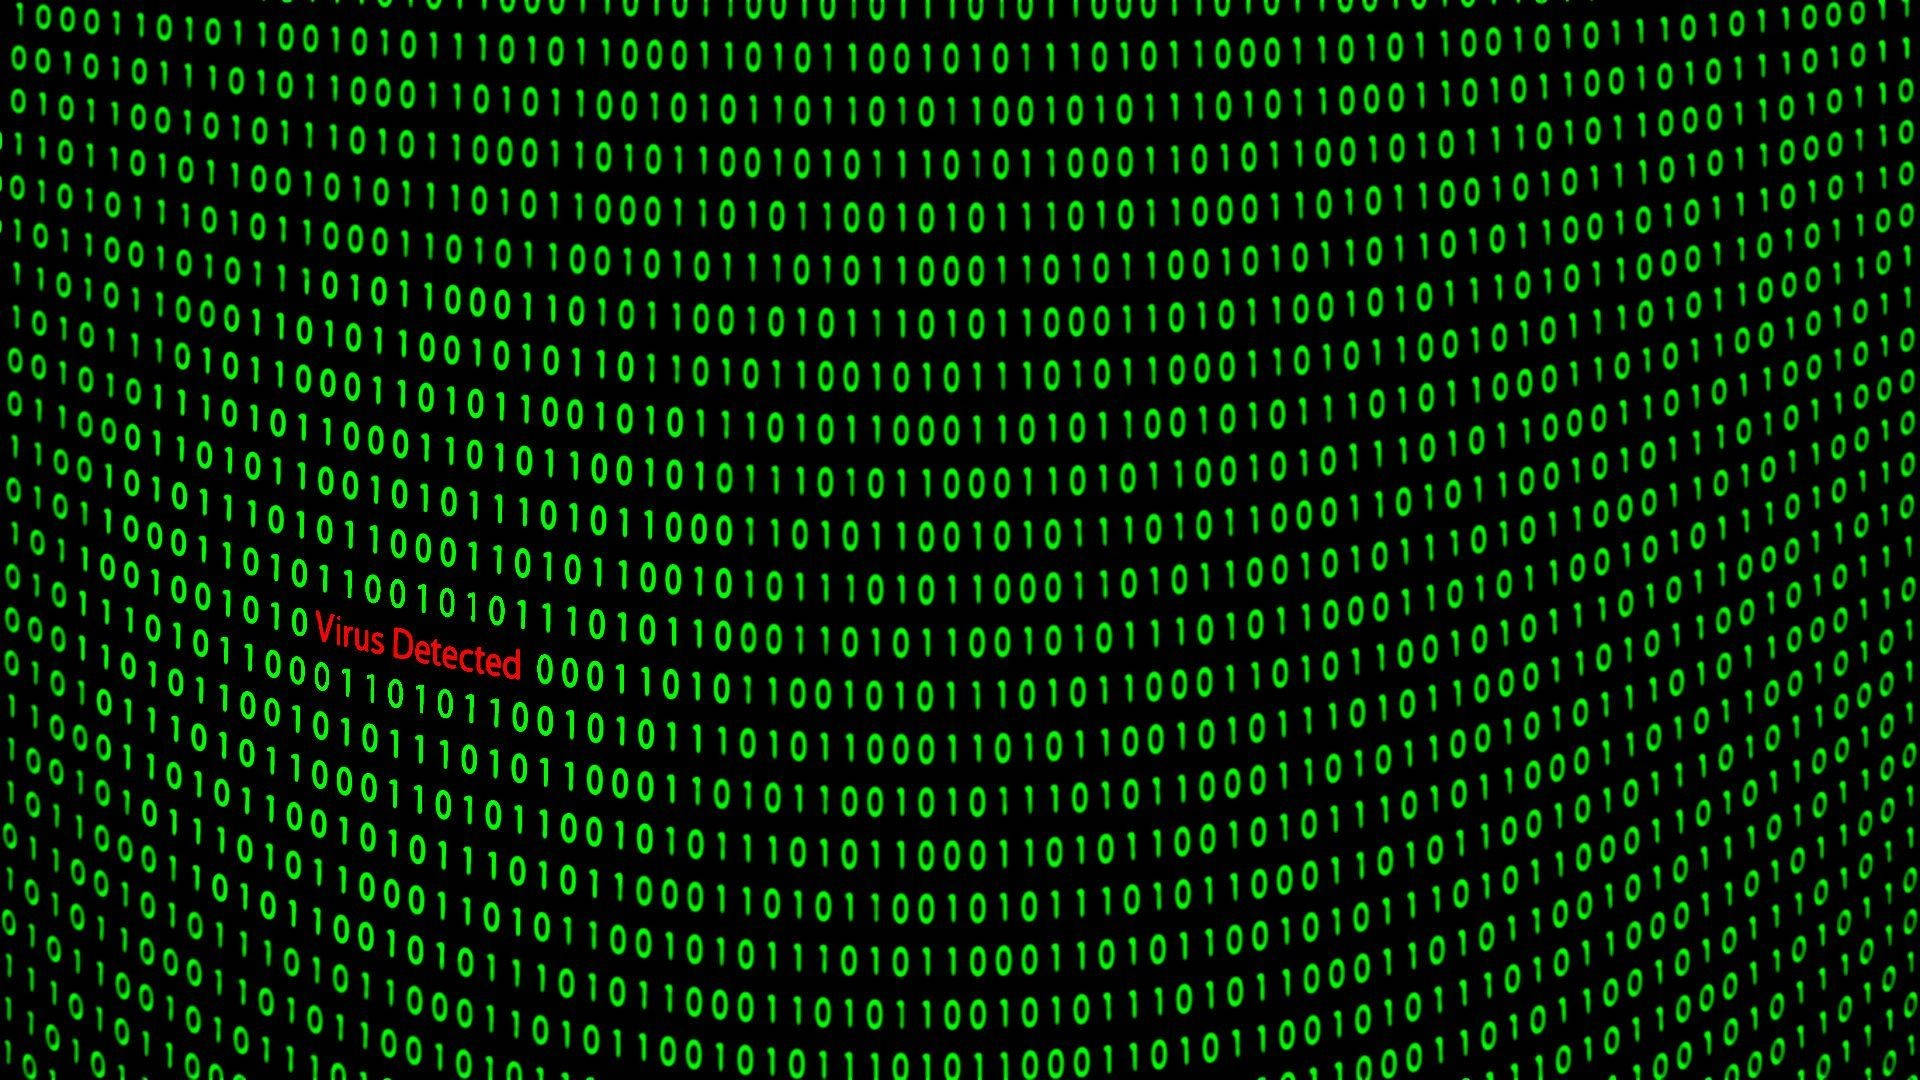 Download Virus Detected Hacker Full Hd Wallpaper 